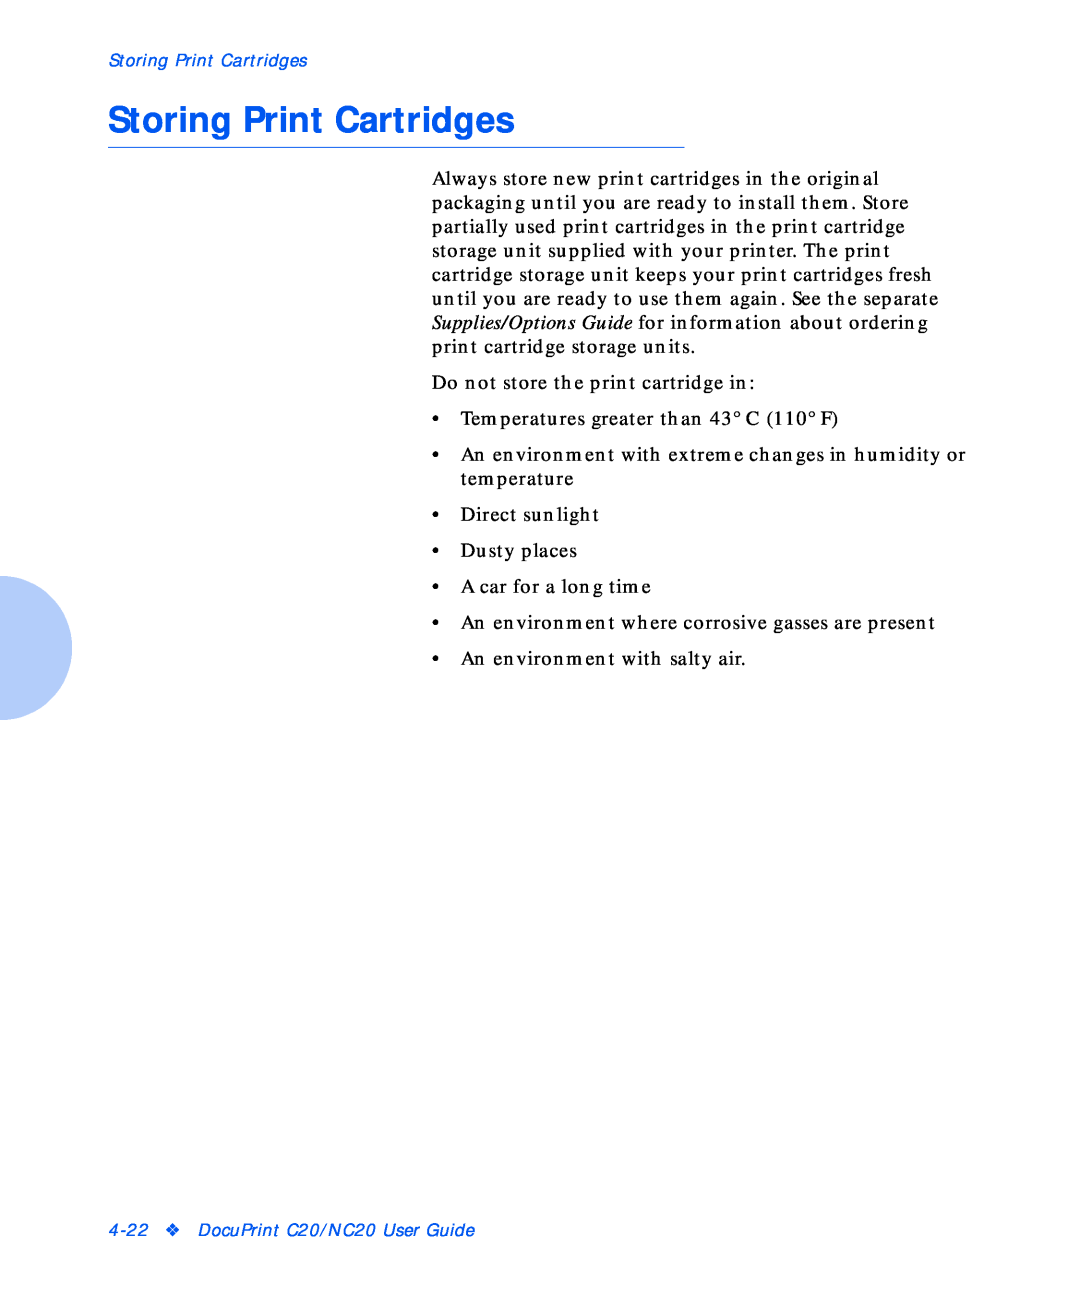 Xerox NC20 manual Storing Print Cartridges 